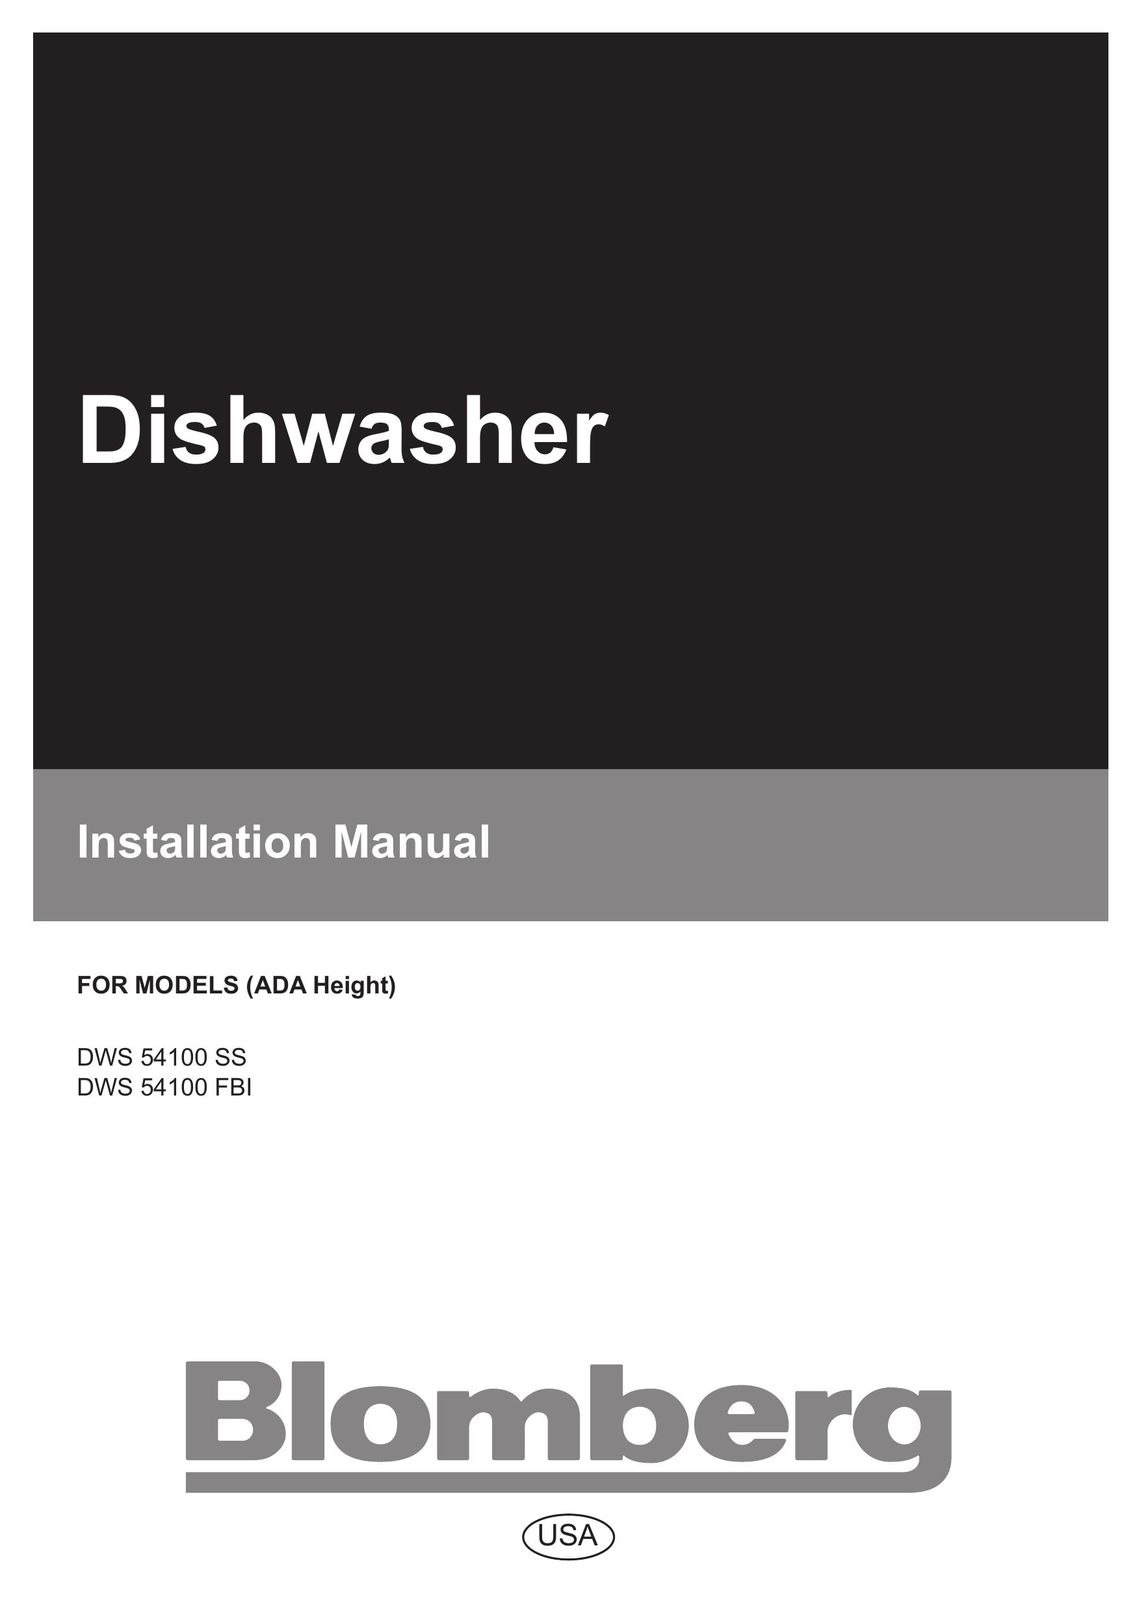 Blomberg DWS 54100 FBI Dishwasher User Manual